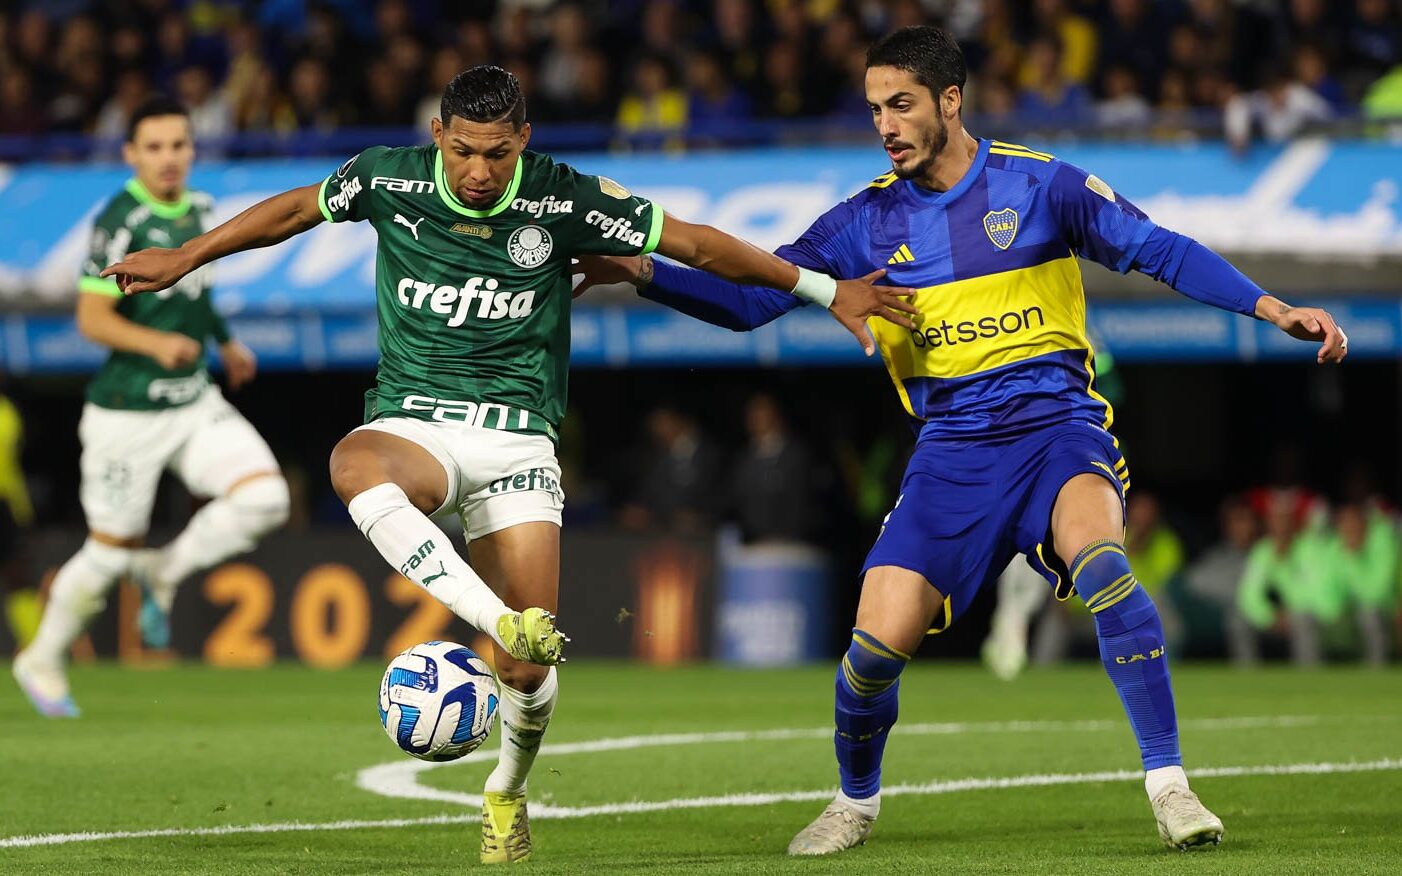 Onde assistir aos jogos do Palmeiras ao vivo na Libertadores 2023?